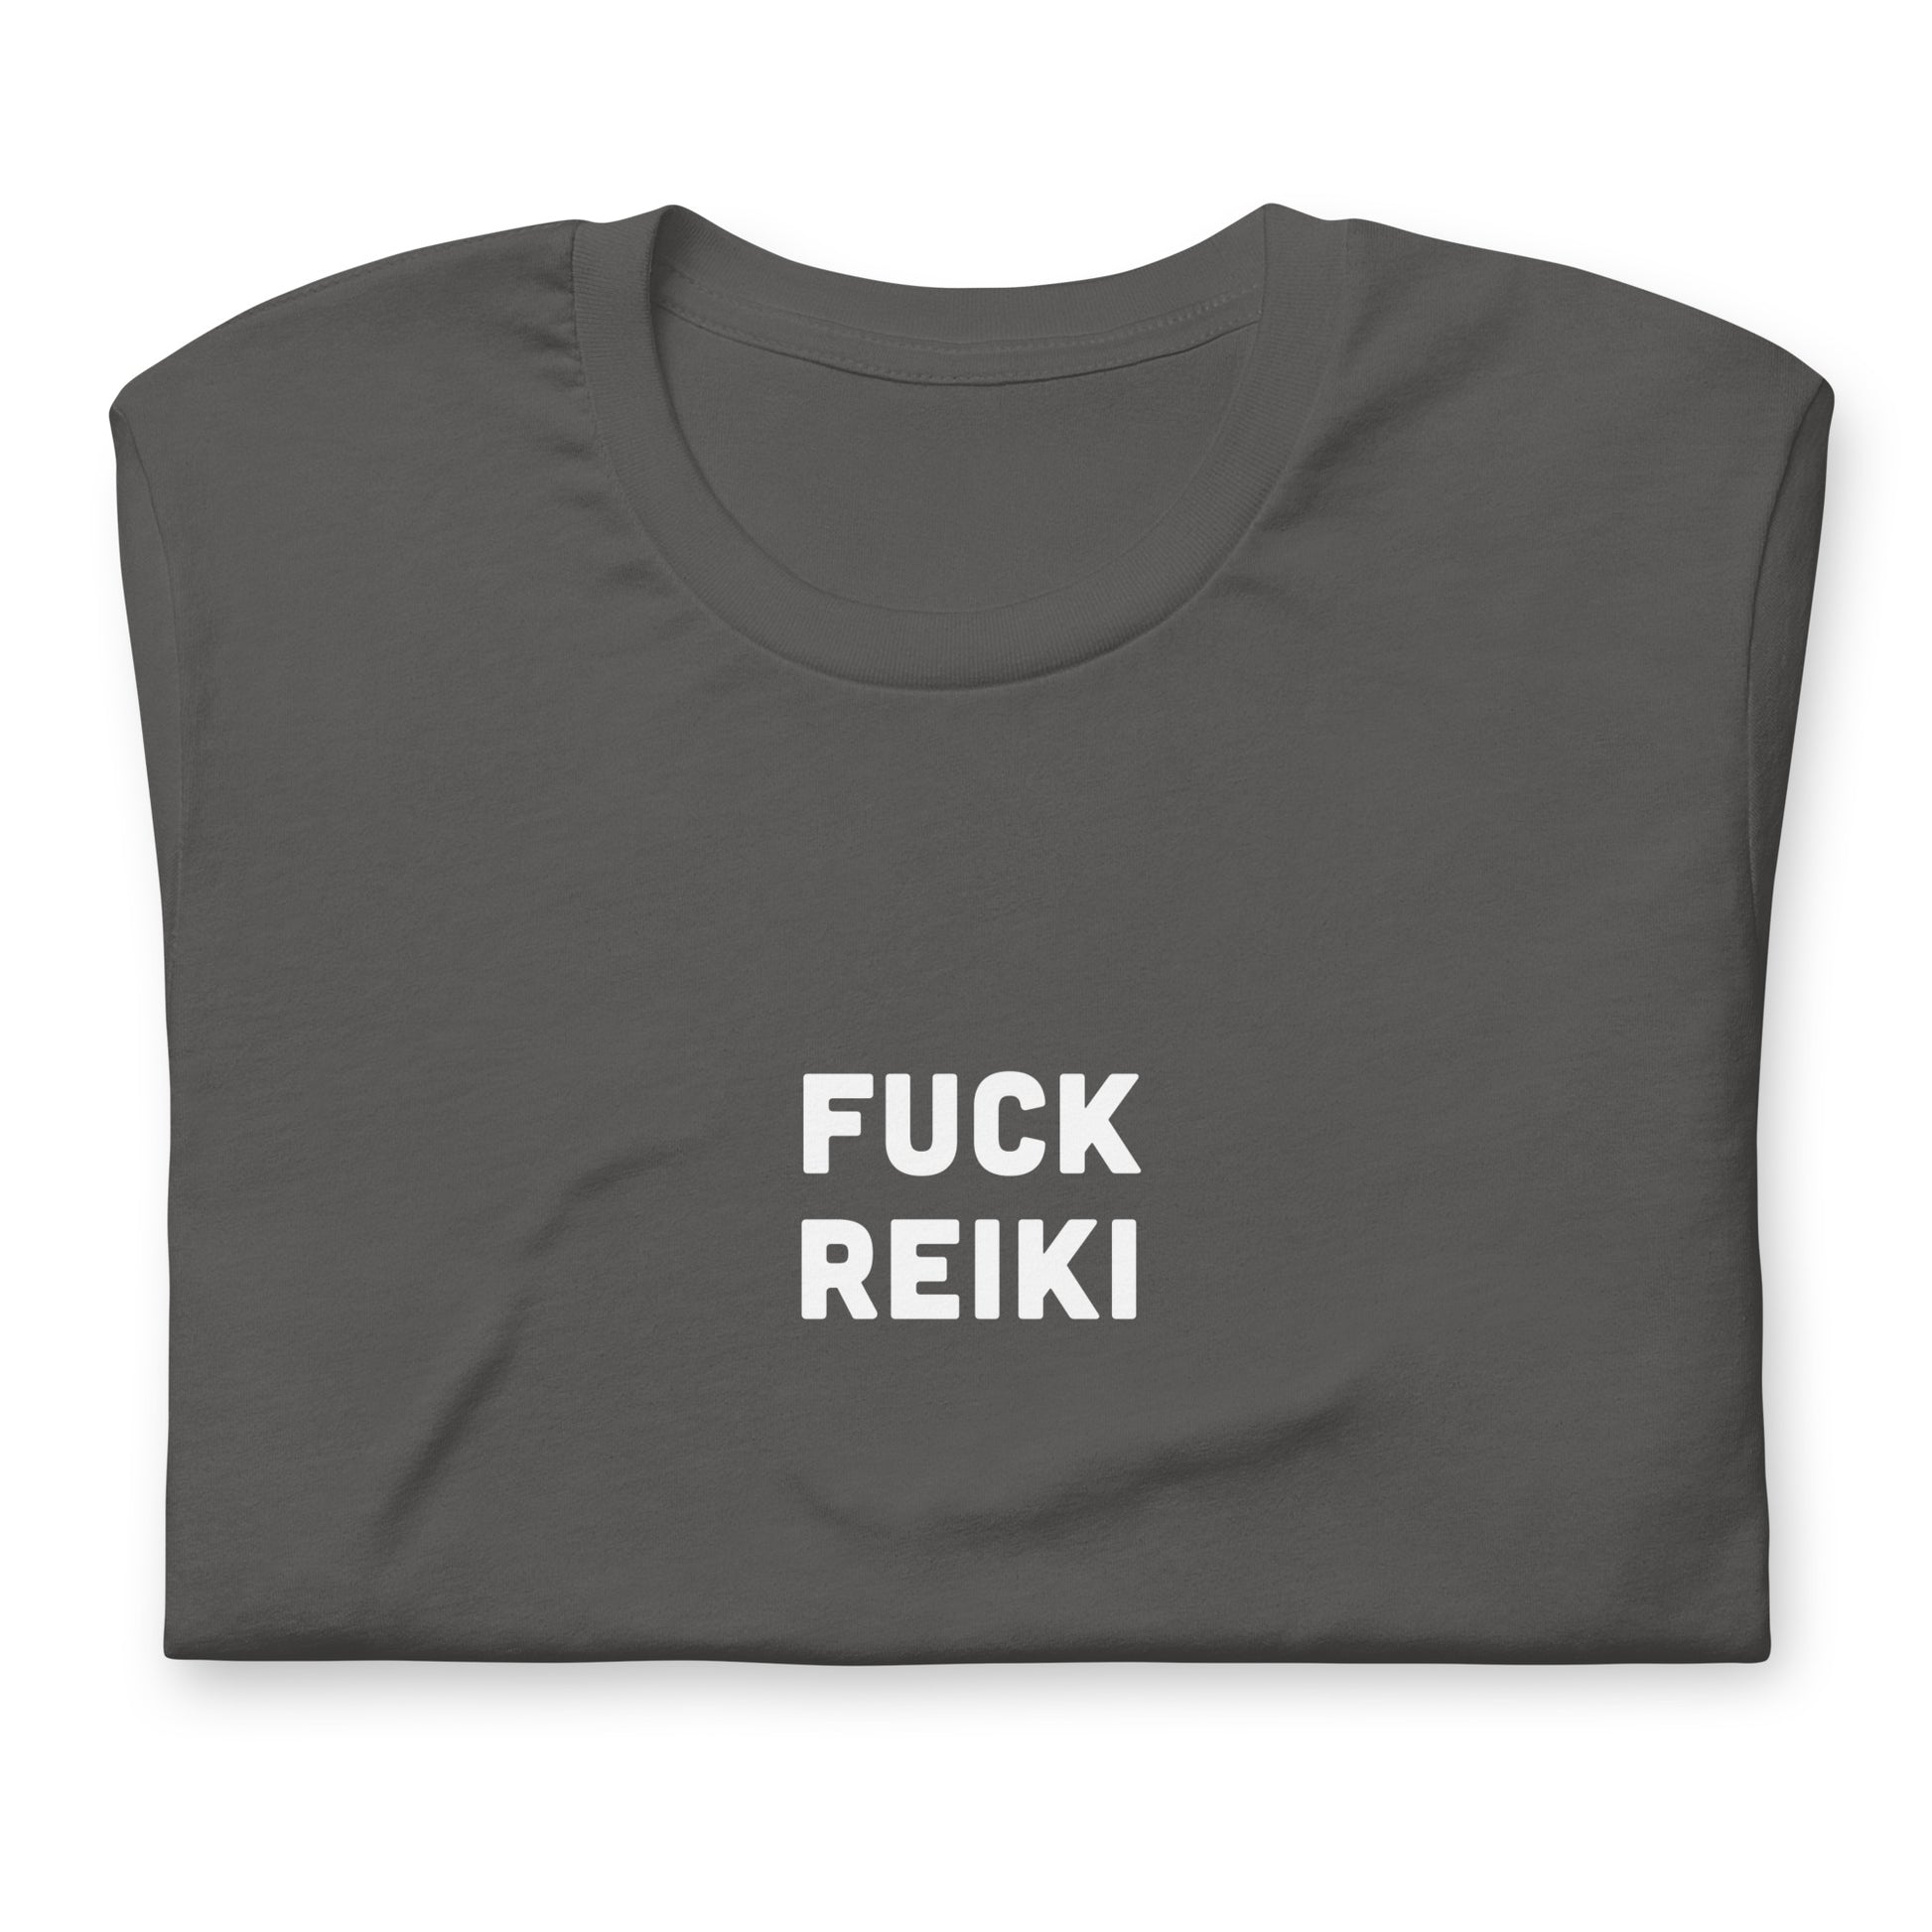 Fuck Reiki T-Shirt Size 2XL Color Black